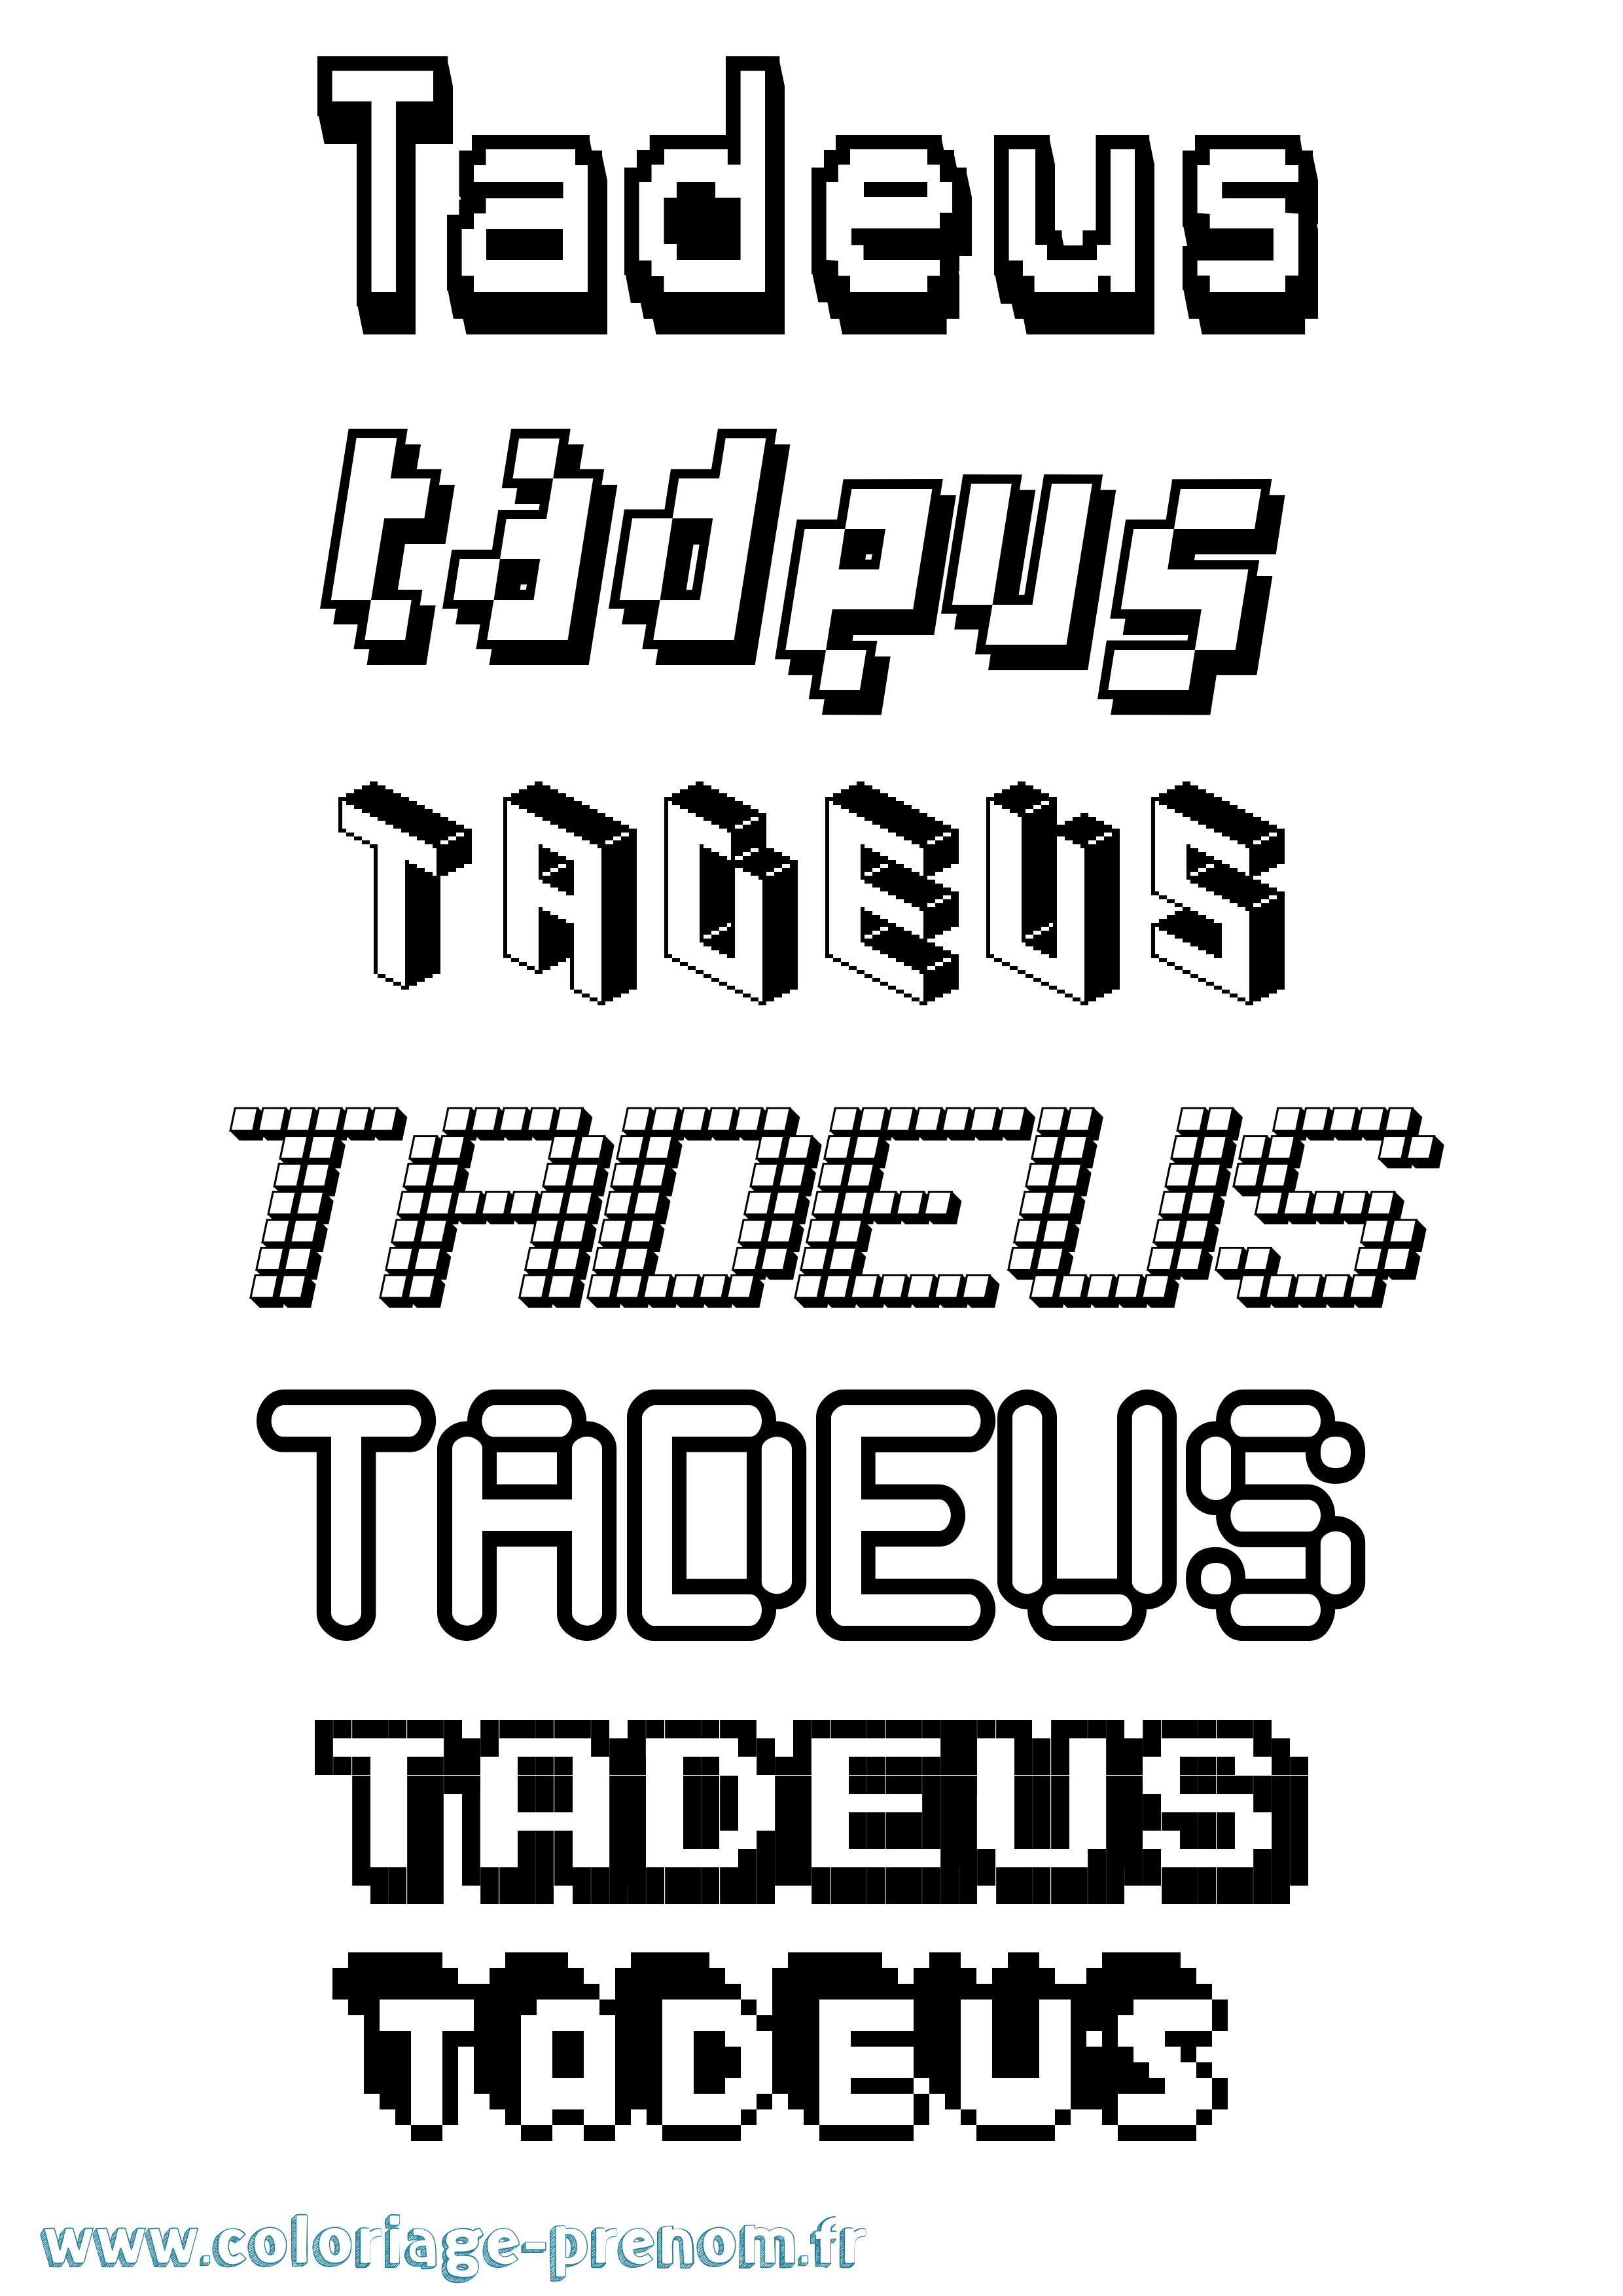 Coloriage prénom Tadeus Pixel